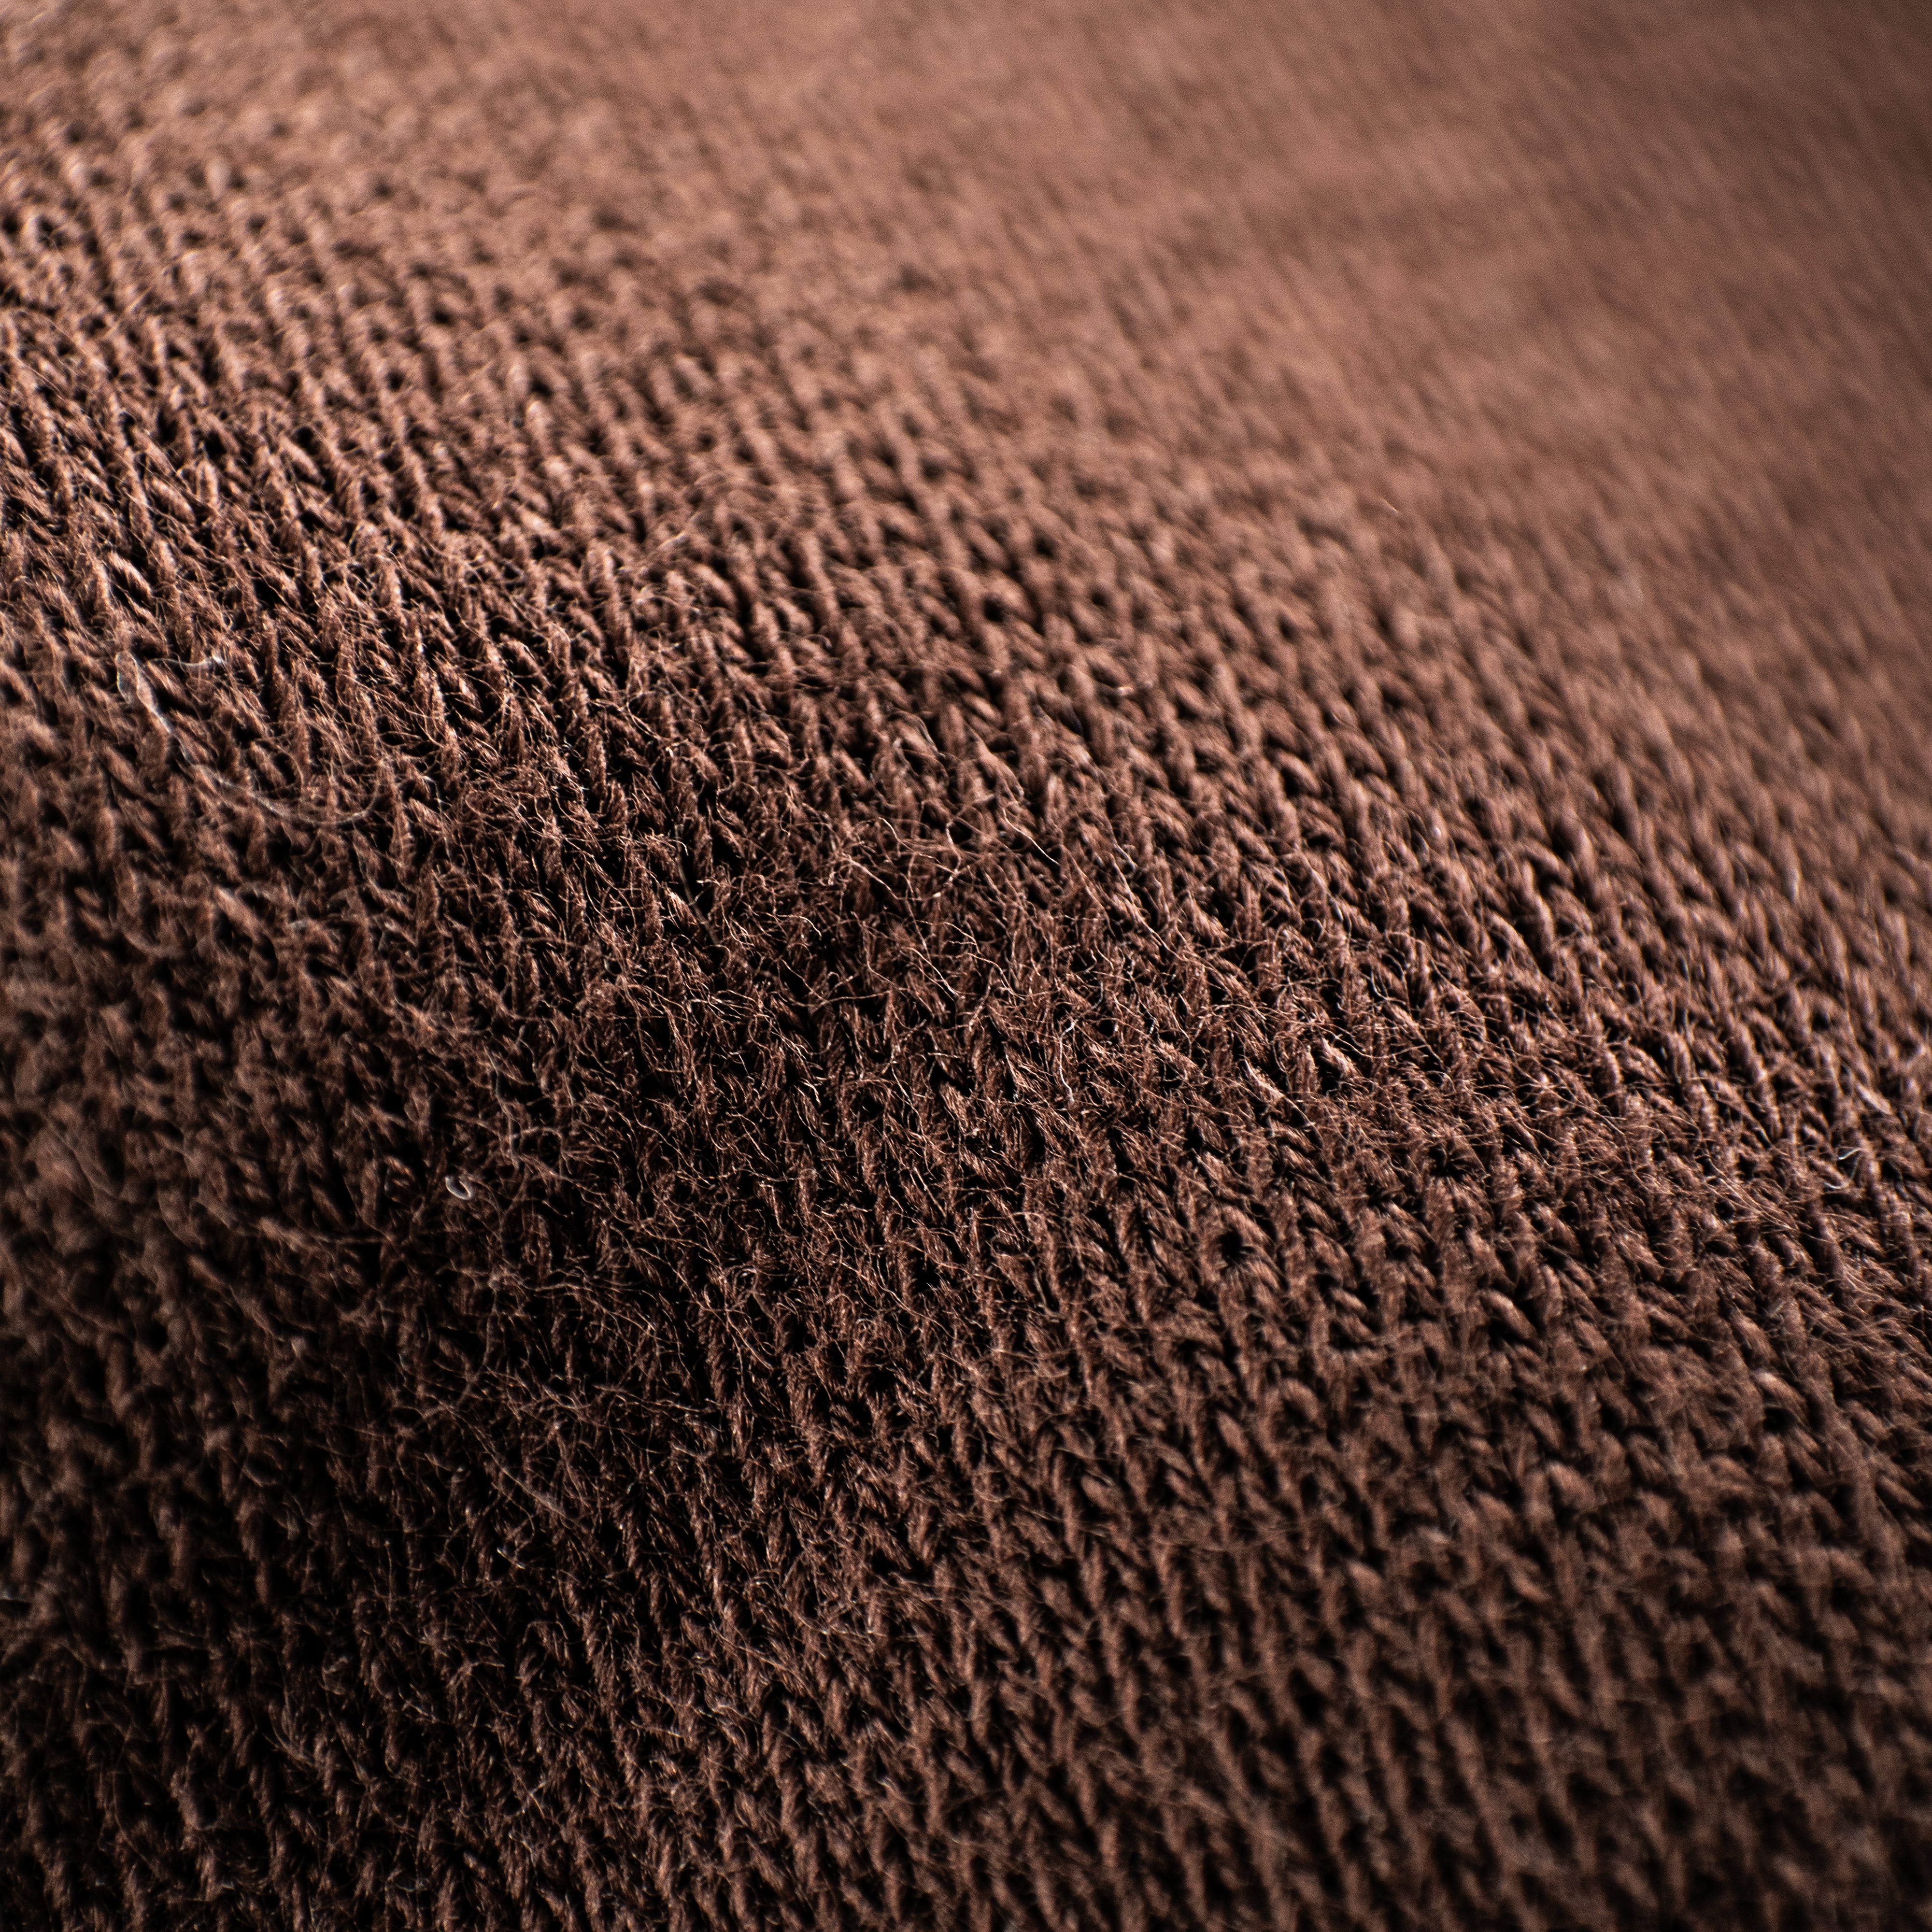 Übergroßes Sweatshirt – Braun